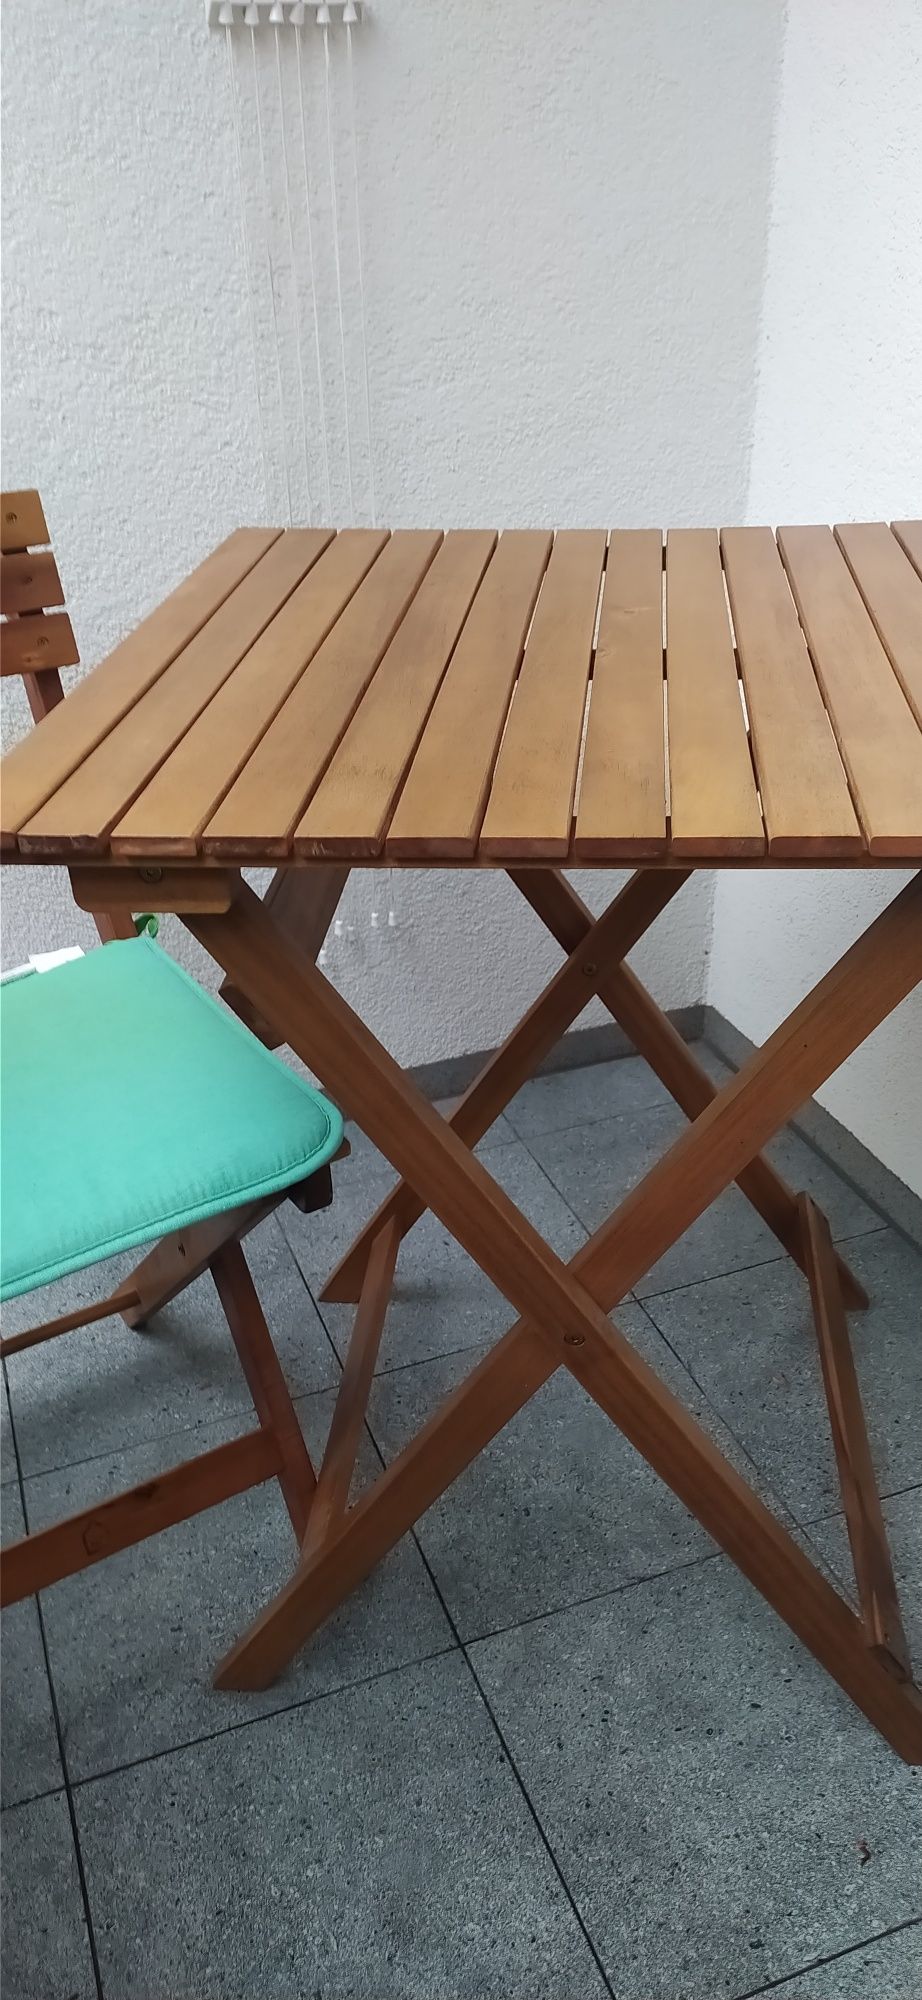 Stolik 60x60, krzesła ogrodowe/balkonowe, drewno, stan idealny